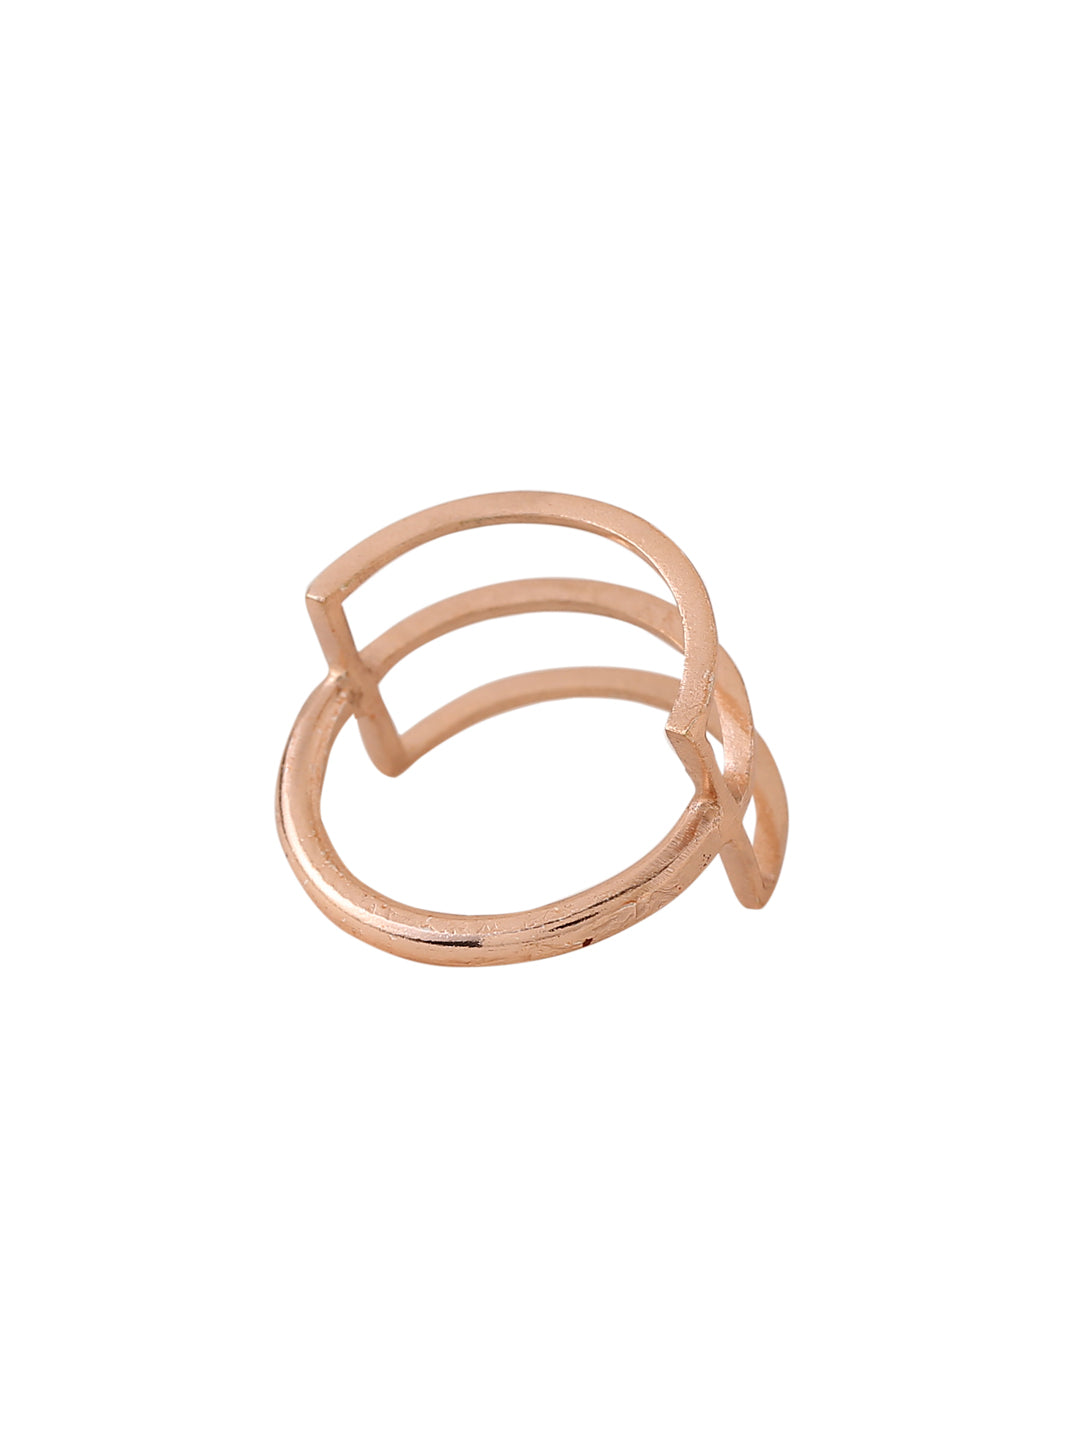 Bezel Ring - Rose Gold